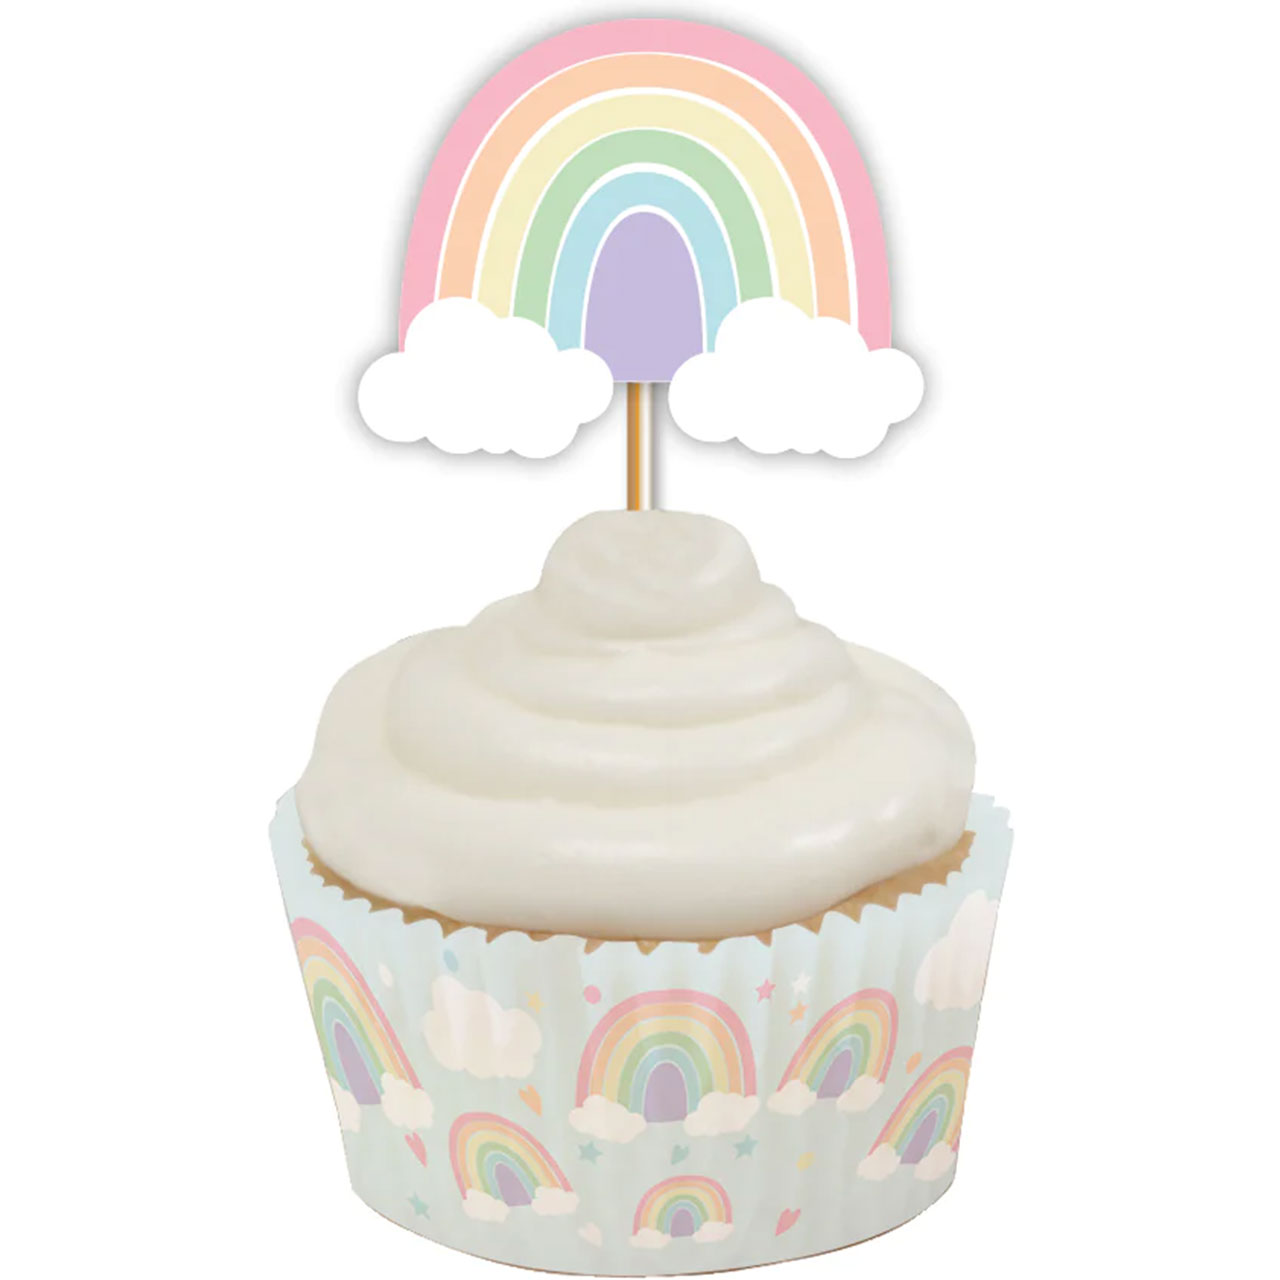 Cupcake Topper - Pastel Regenbogen